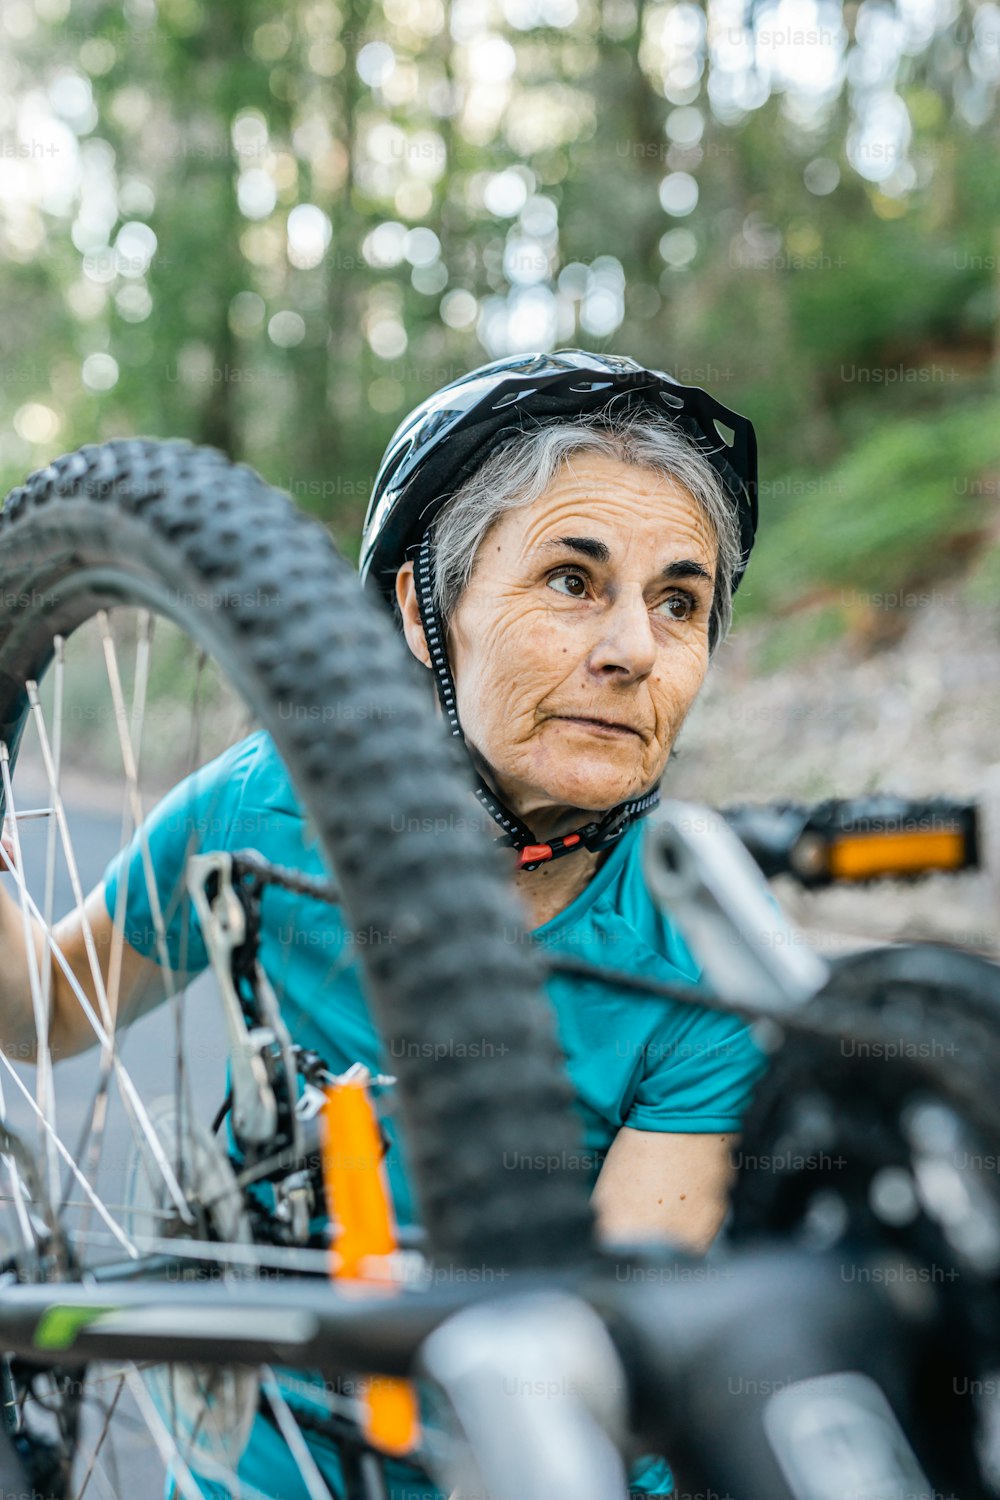 Eine Frau mit Helm steht neben einem Fahrrad